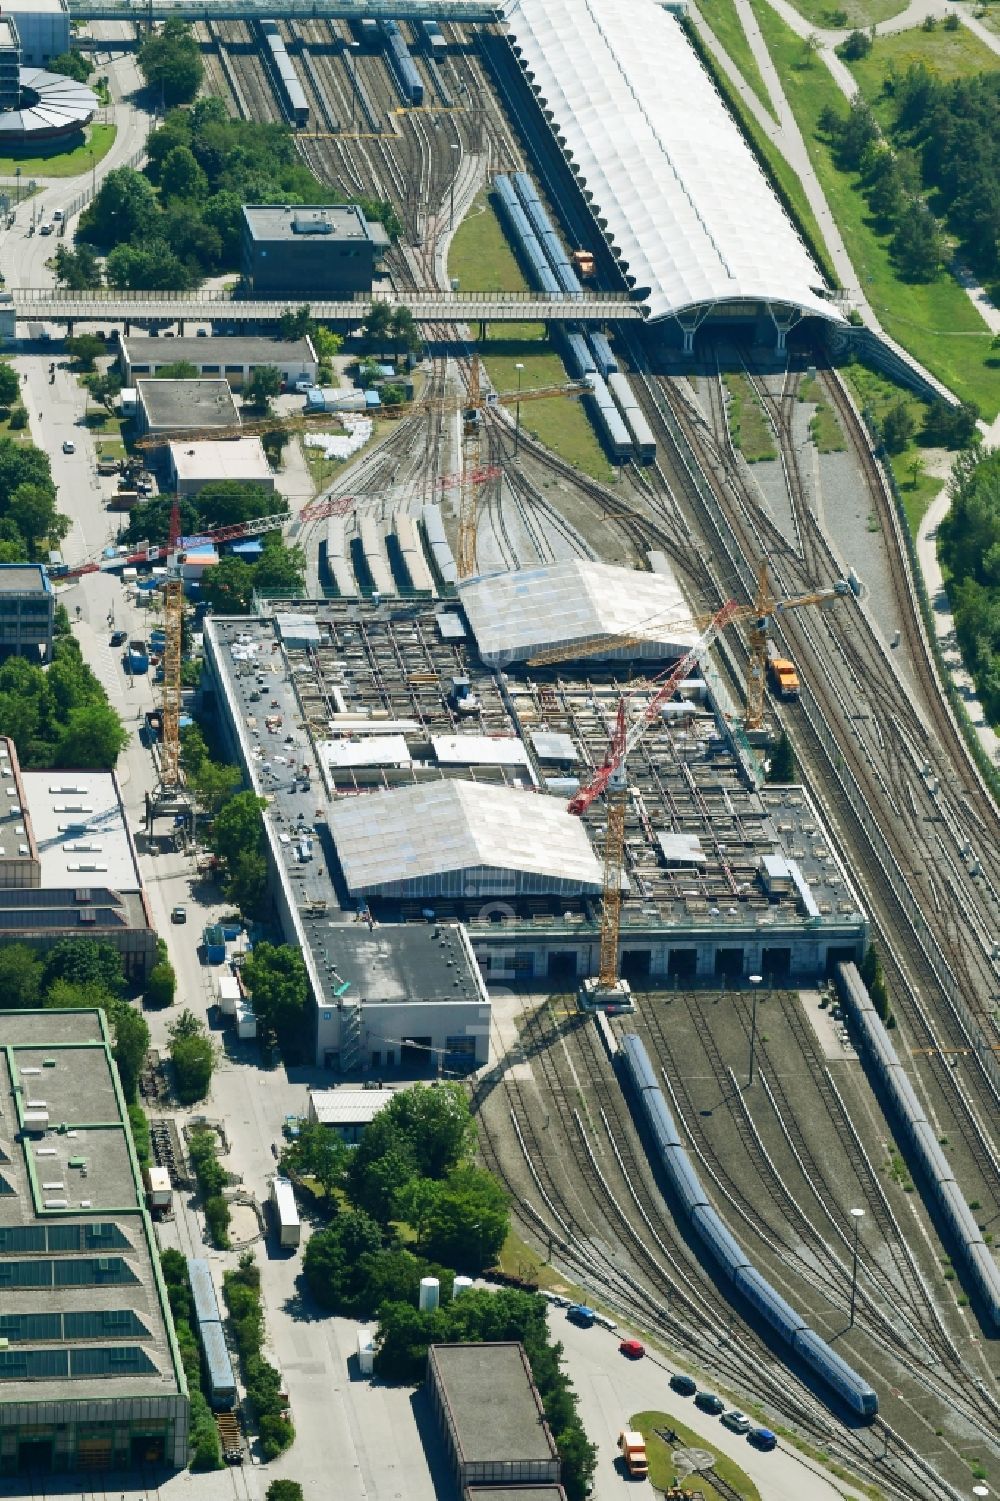 Luftbild München - Sanierung der Instandhaltungswerkstatt und Ausbesserungswerk für Zug- Waggons in München im Bundesland Bayern, Deutschland